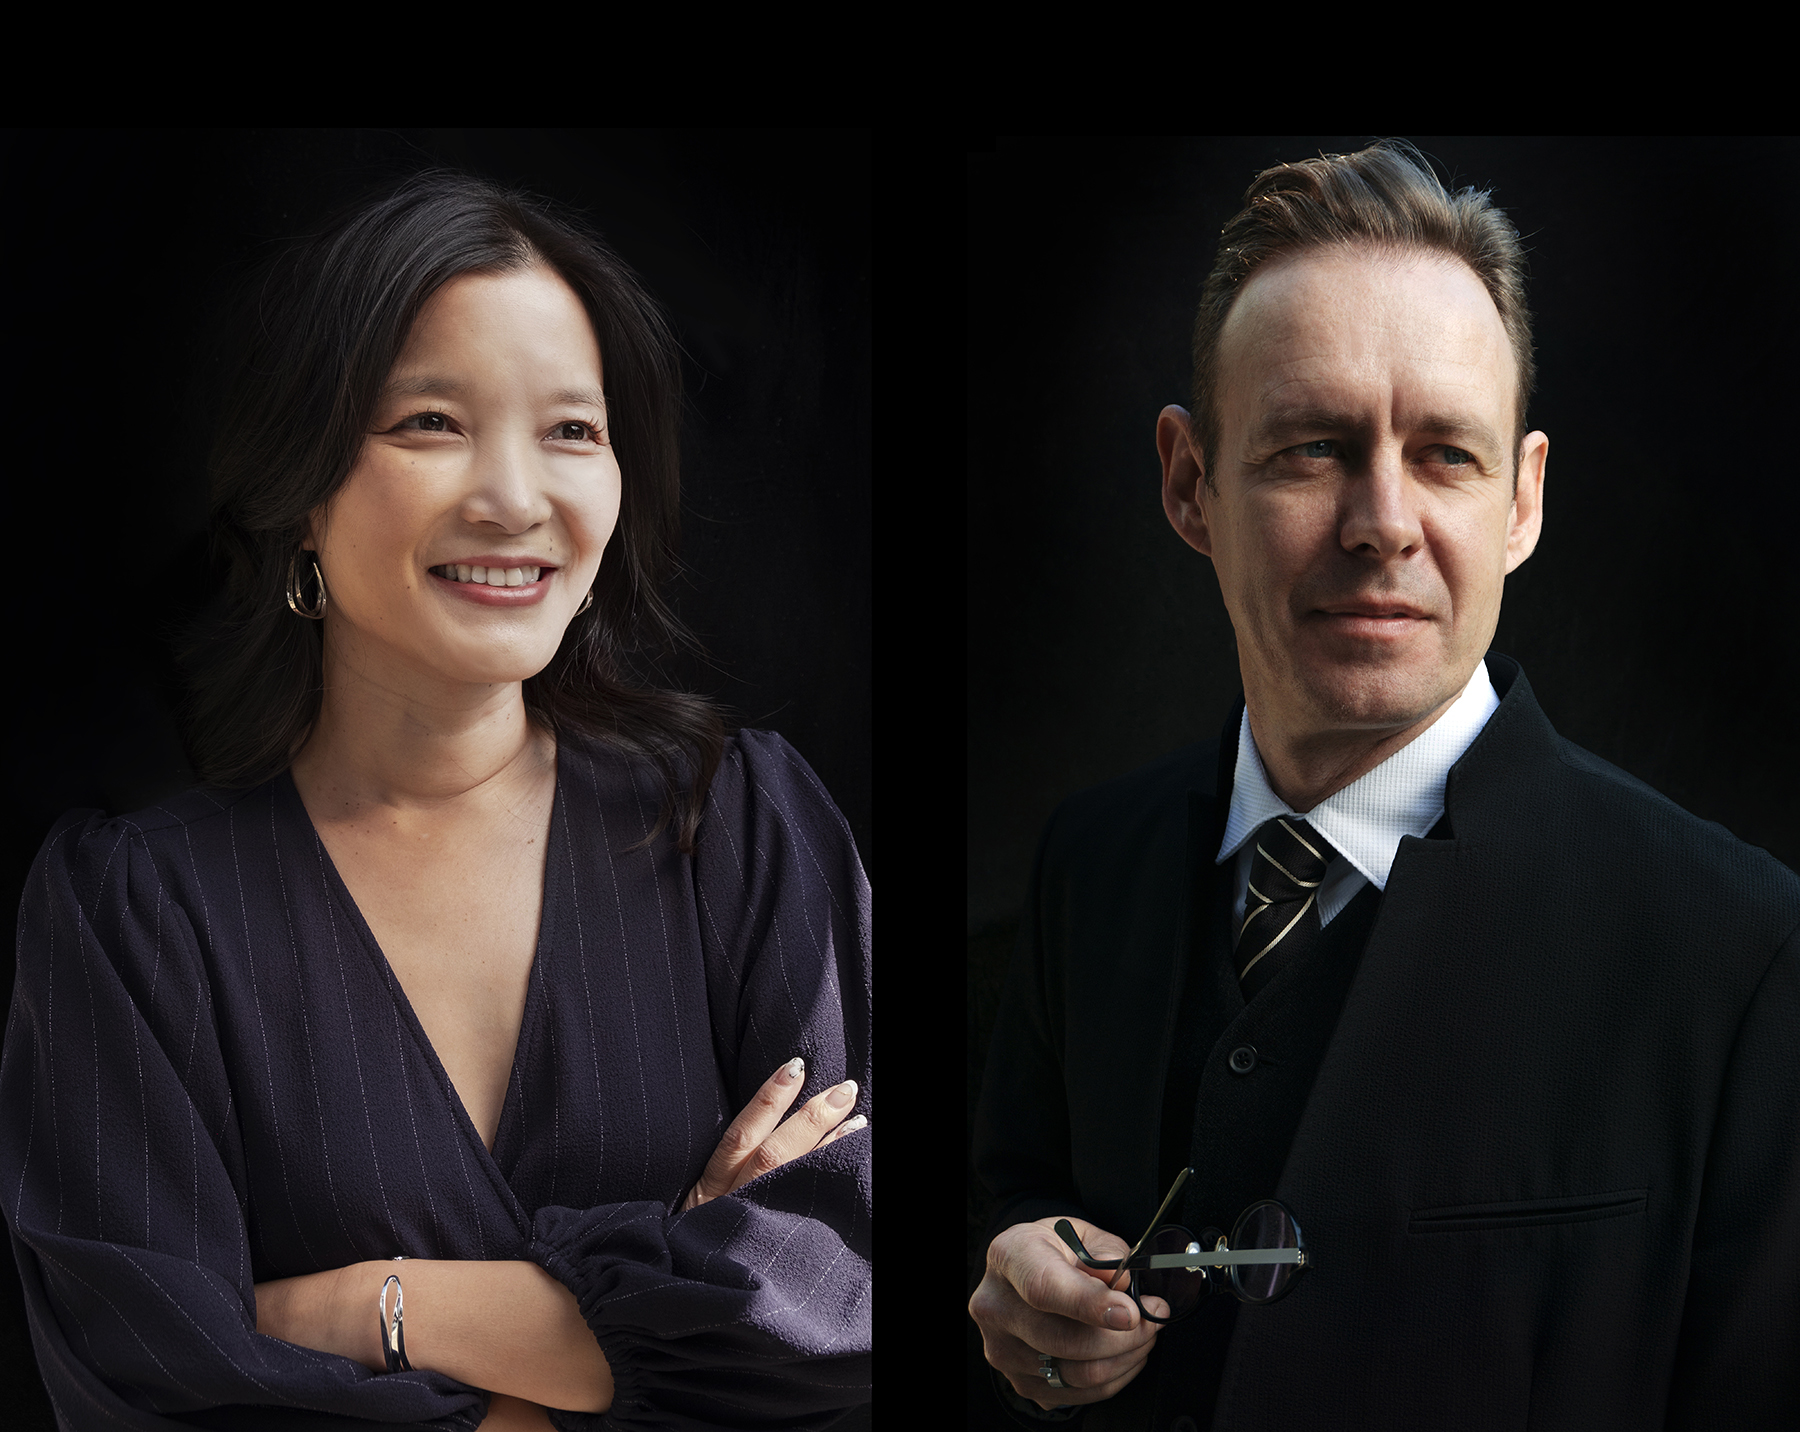 Jenny Wu and Dwayne Oyler photograph portrait with black background